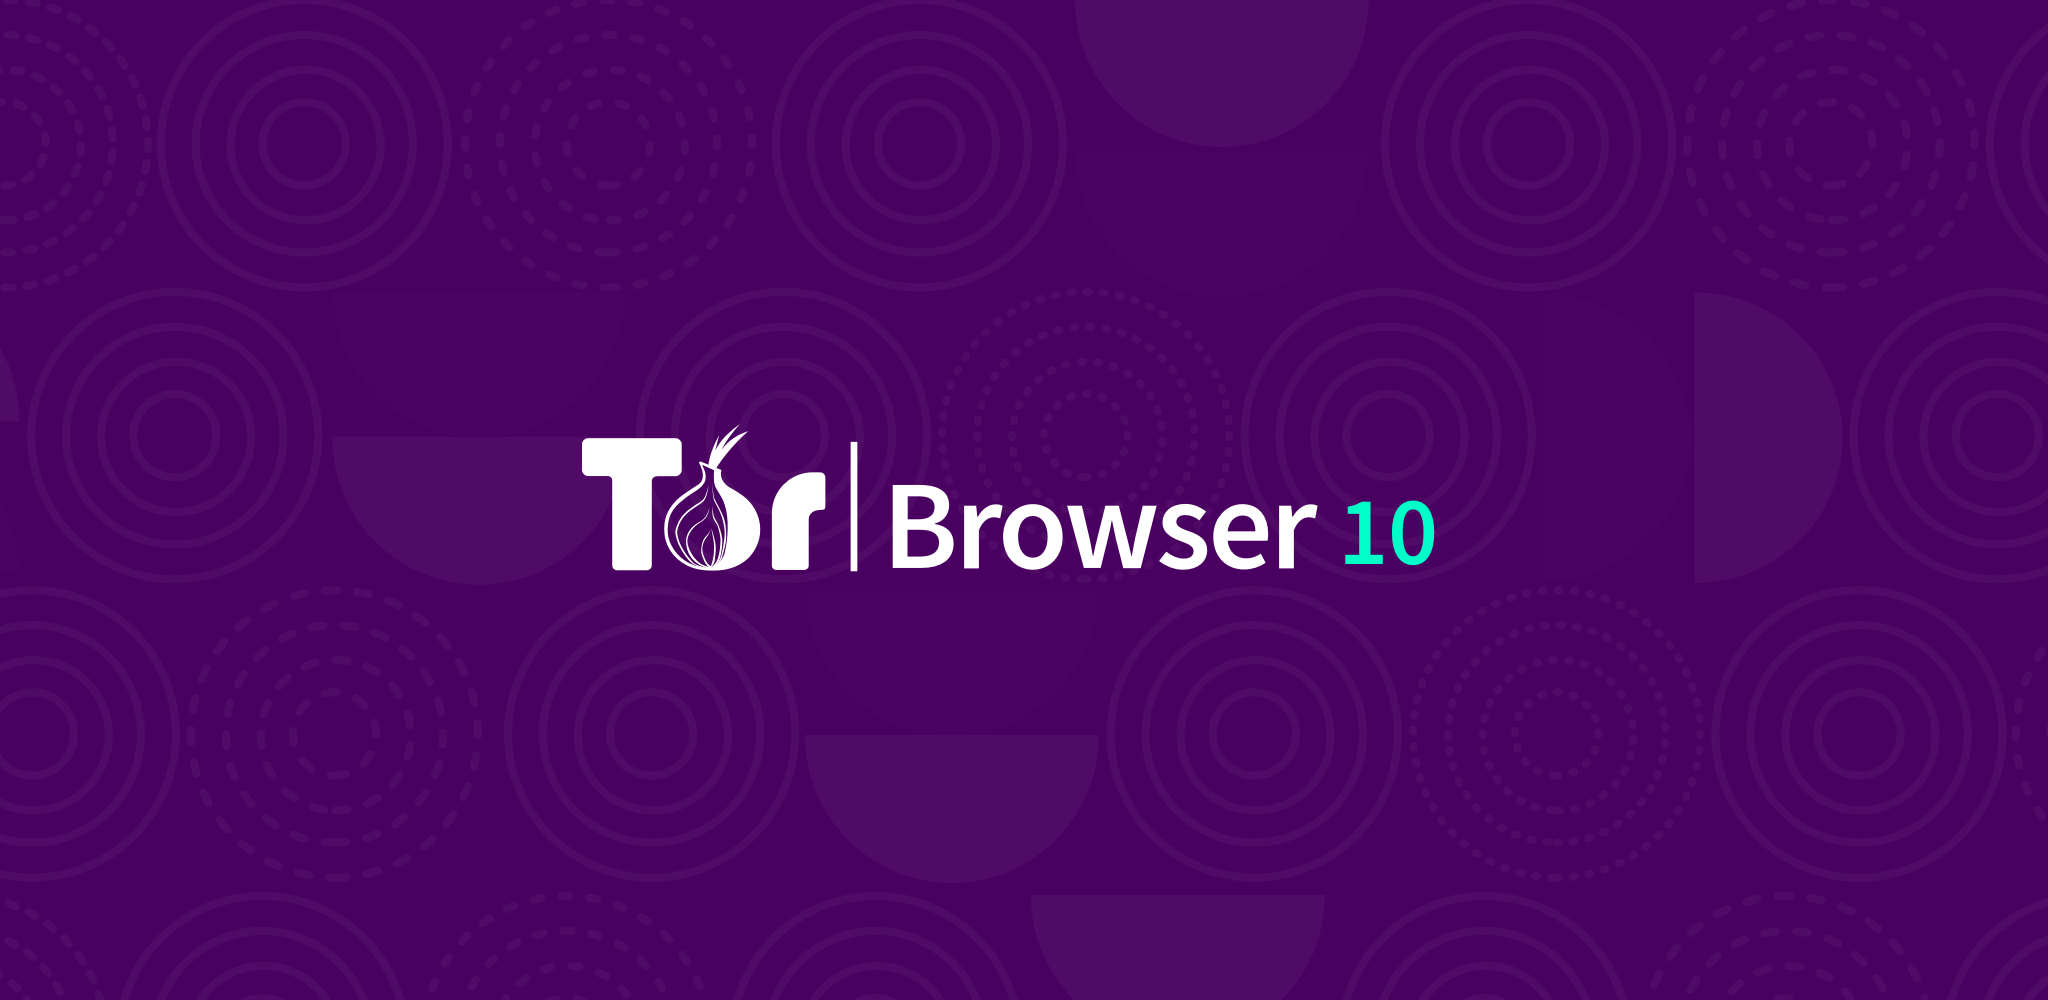 Tor browser на виндовс 10 конопля дикая природа